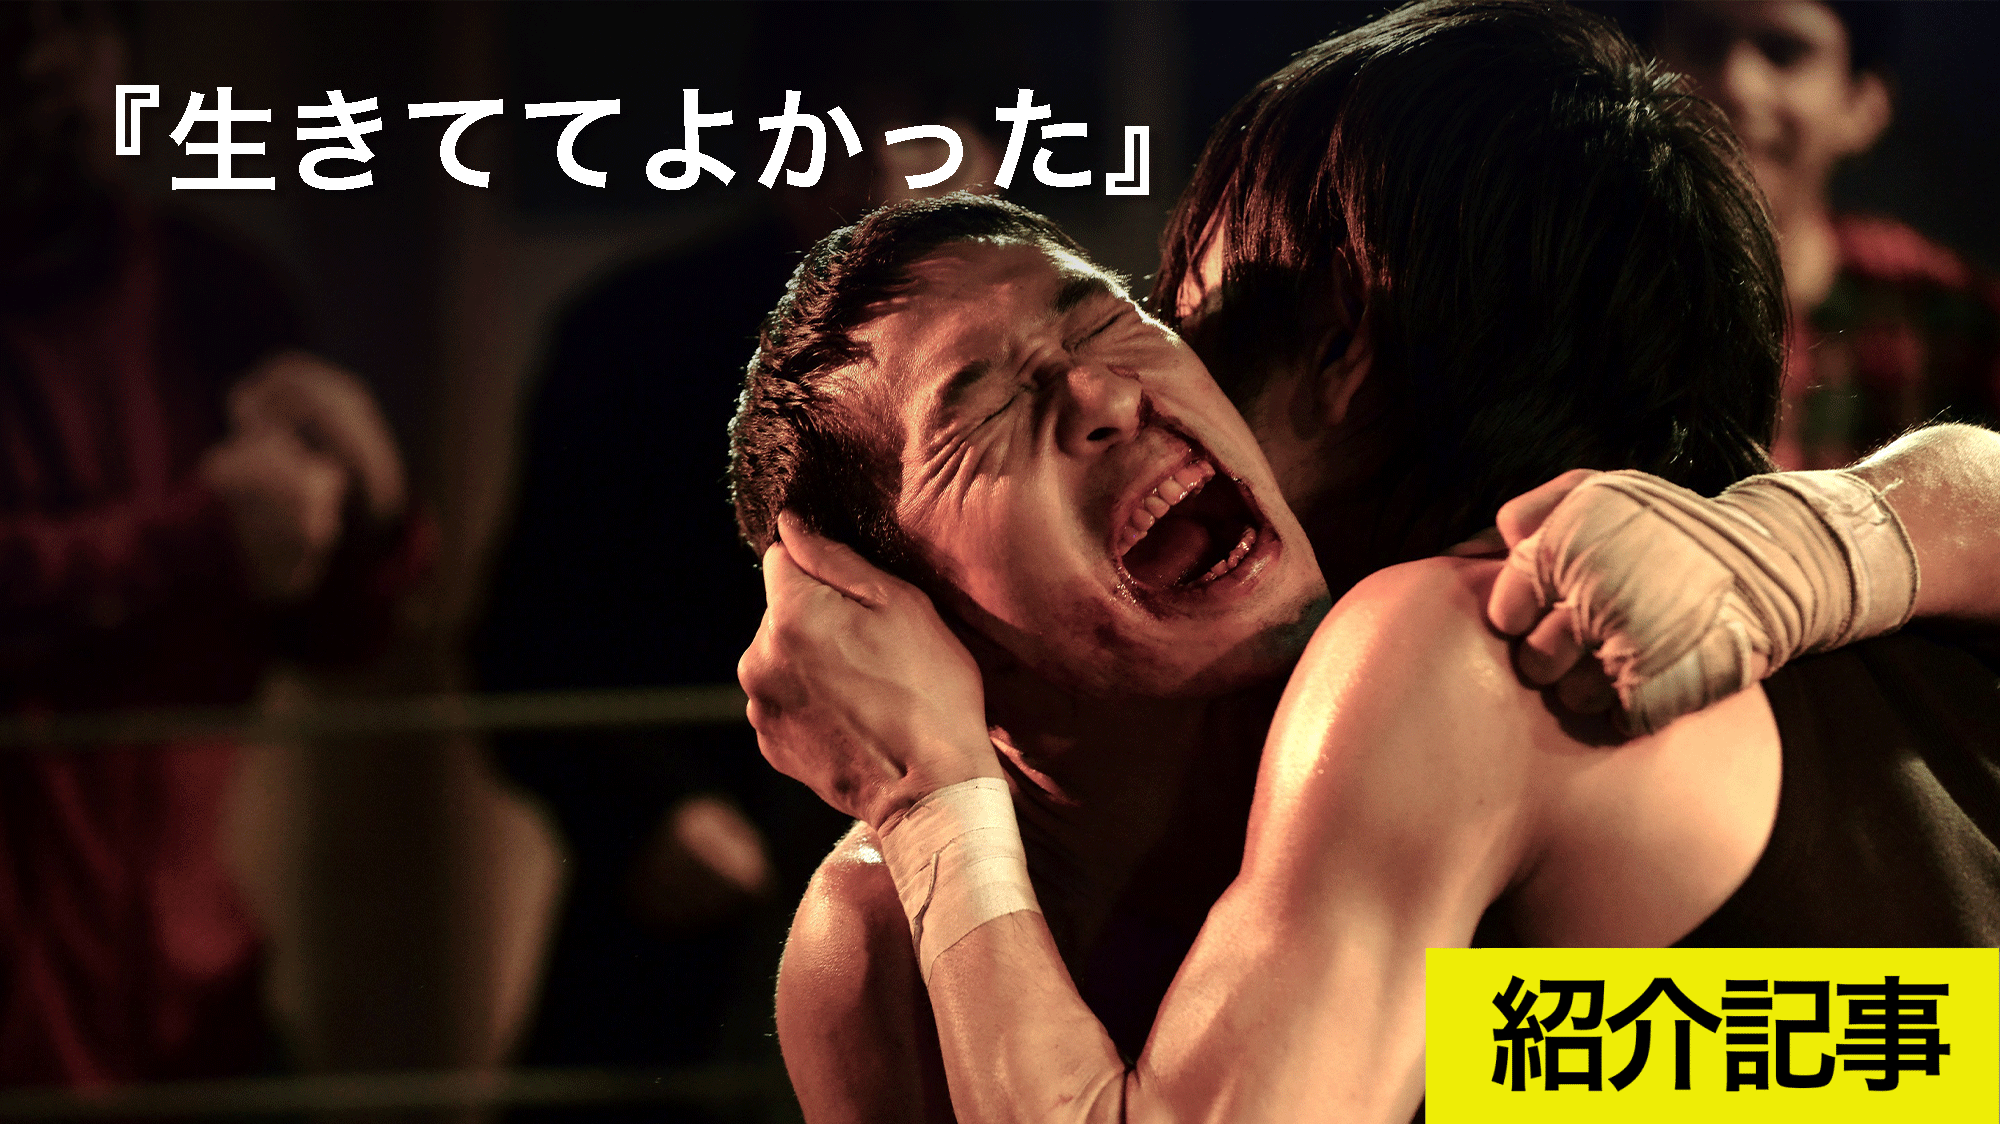 死に物狂いで生き切ったボクサー人生物語『生きててよかった』　プロボクサーの資格を持つ木幡竜主演で描く日本版『ロッキー』